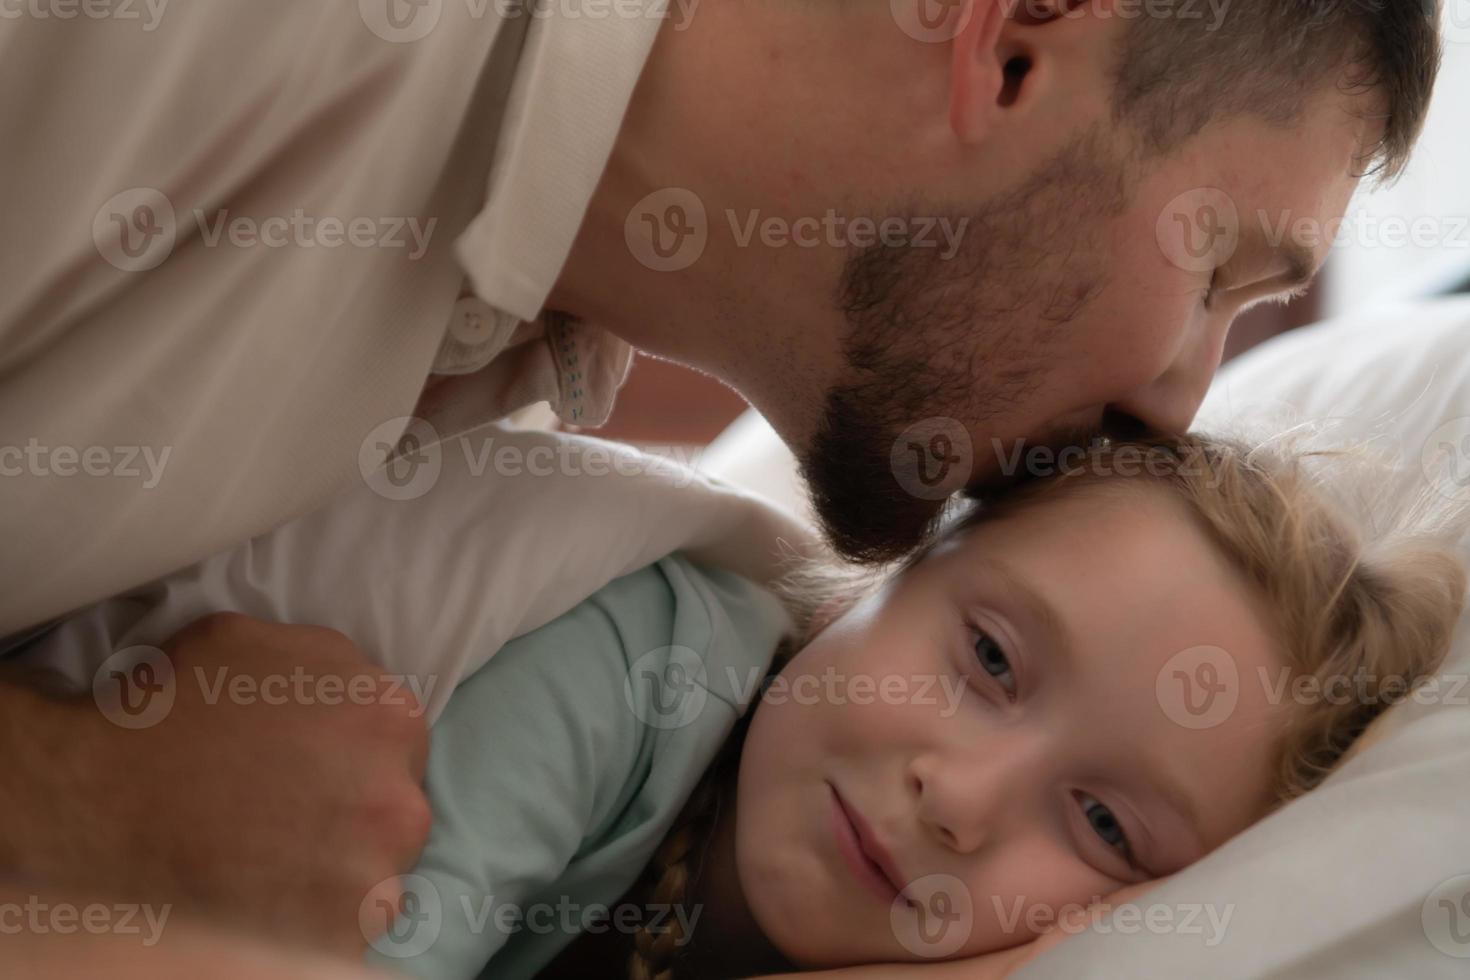 voordat met pensioen gaan naar nacht, een vader drukt uit zijn genegenheid door zoenen zijn dochter Aan de voorhoofd. naar krijgen een mooi zo nacht rust uit foto